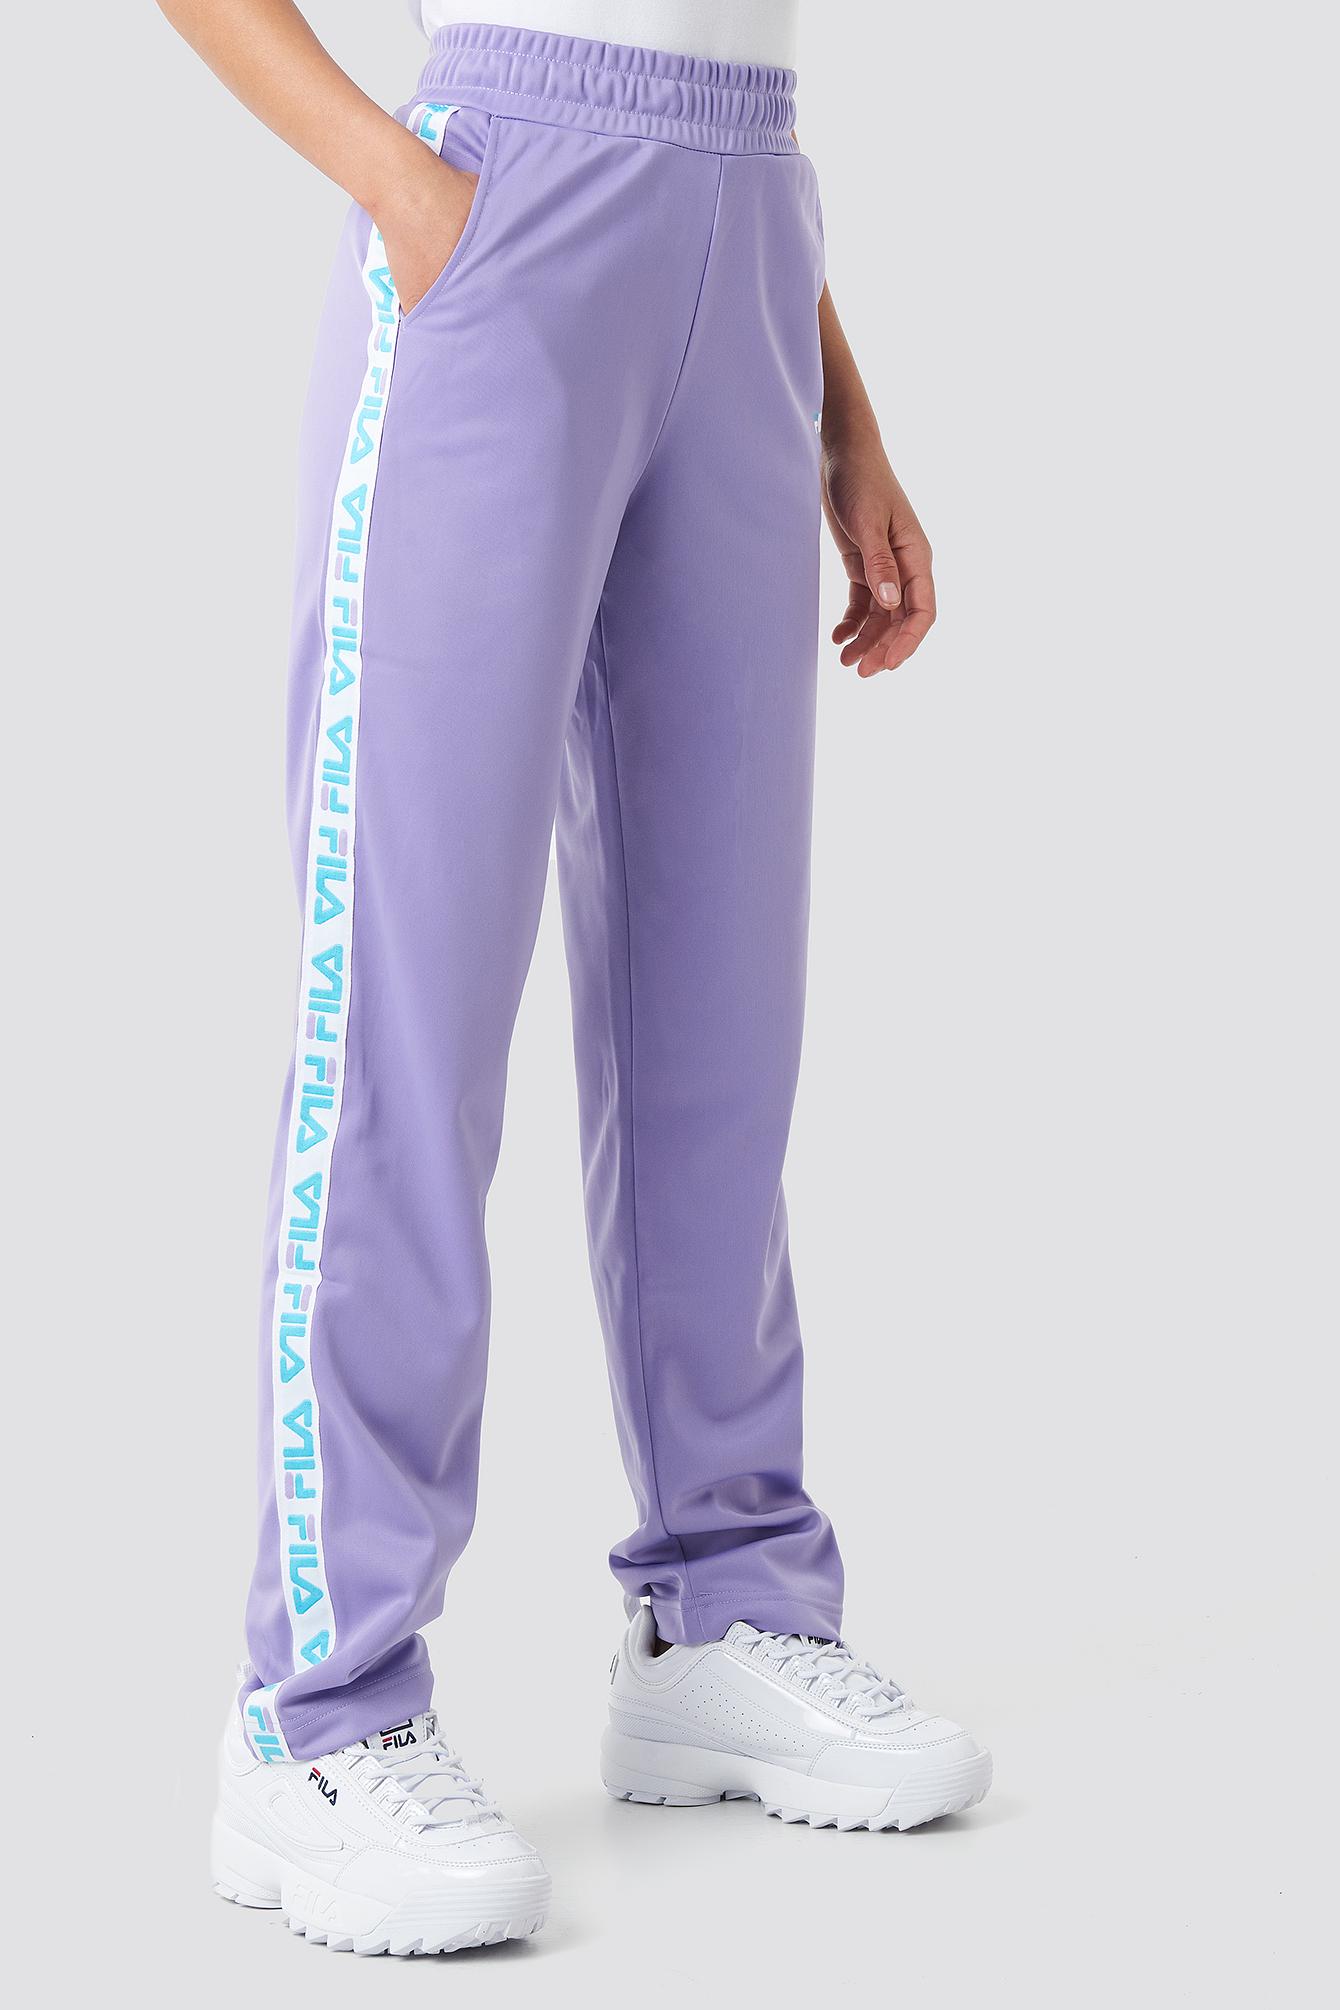 Fila Synthetic Women Strap Track Pants Purple - Lyst